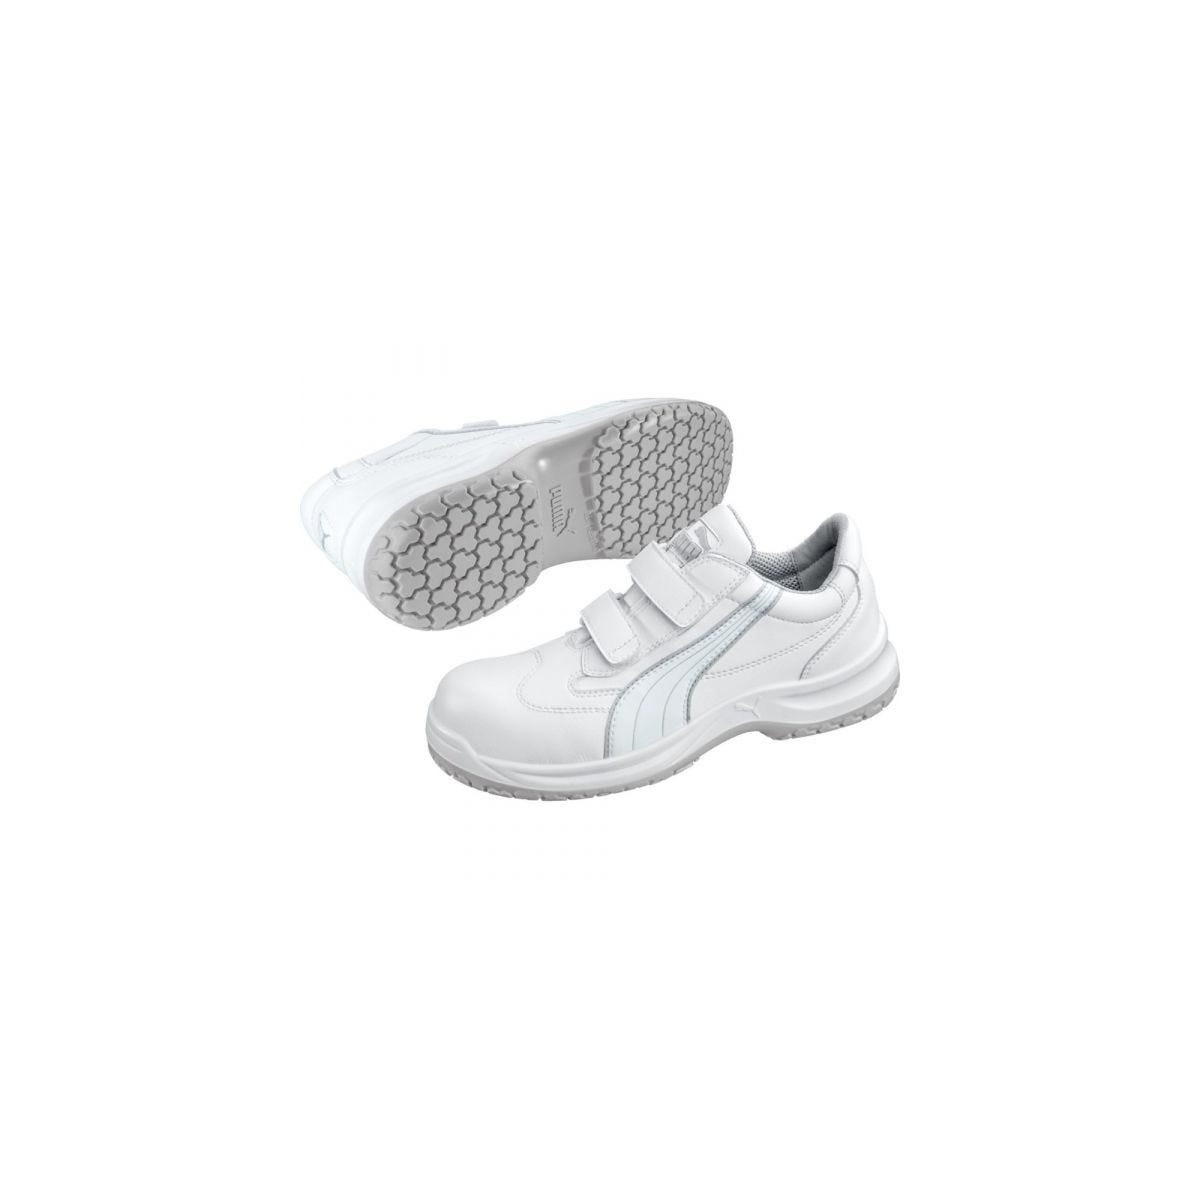 Chaussures de sécurité Absolute Low S2 Blanc - Puma - Taille 44 0